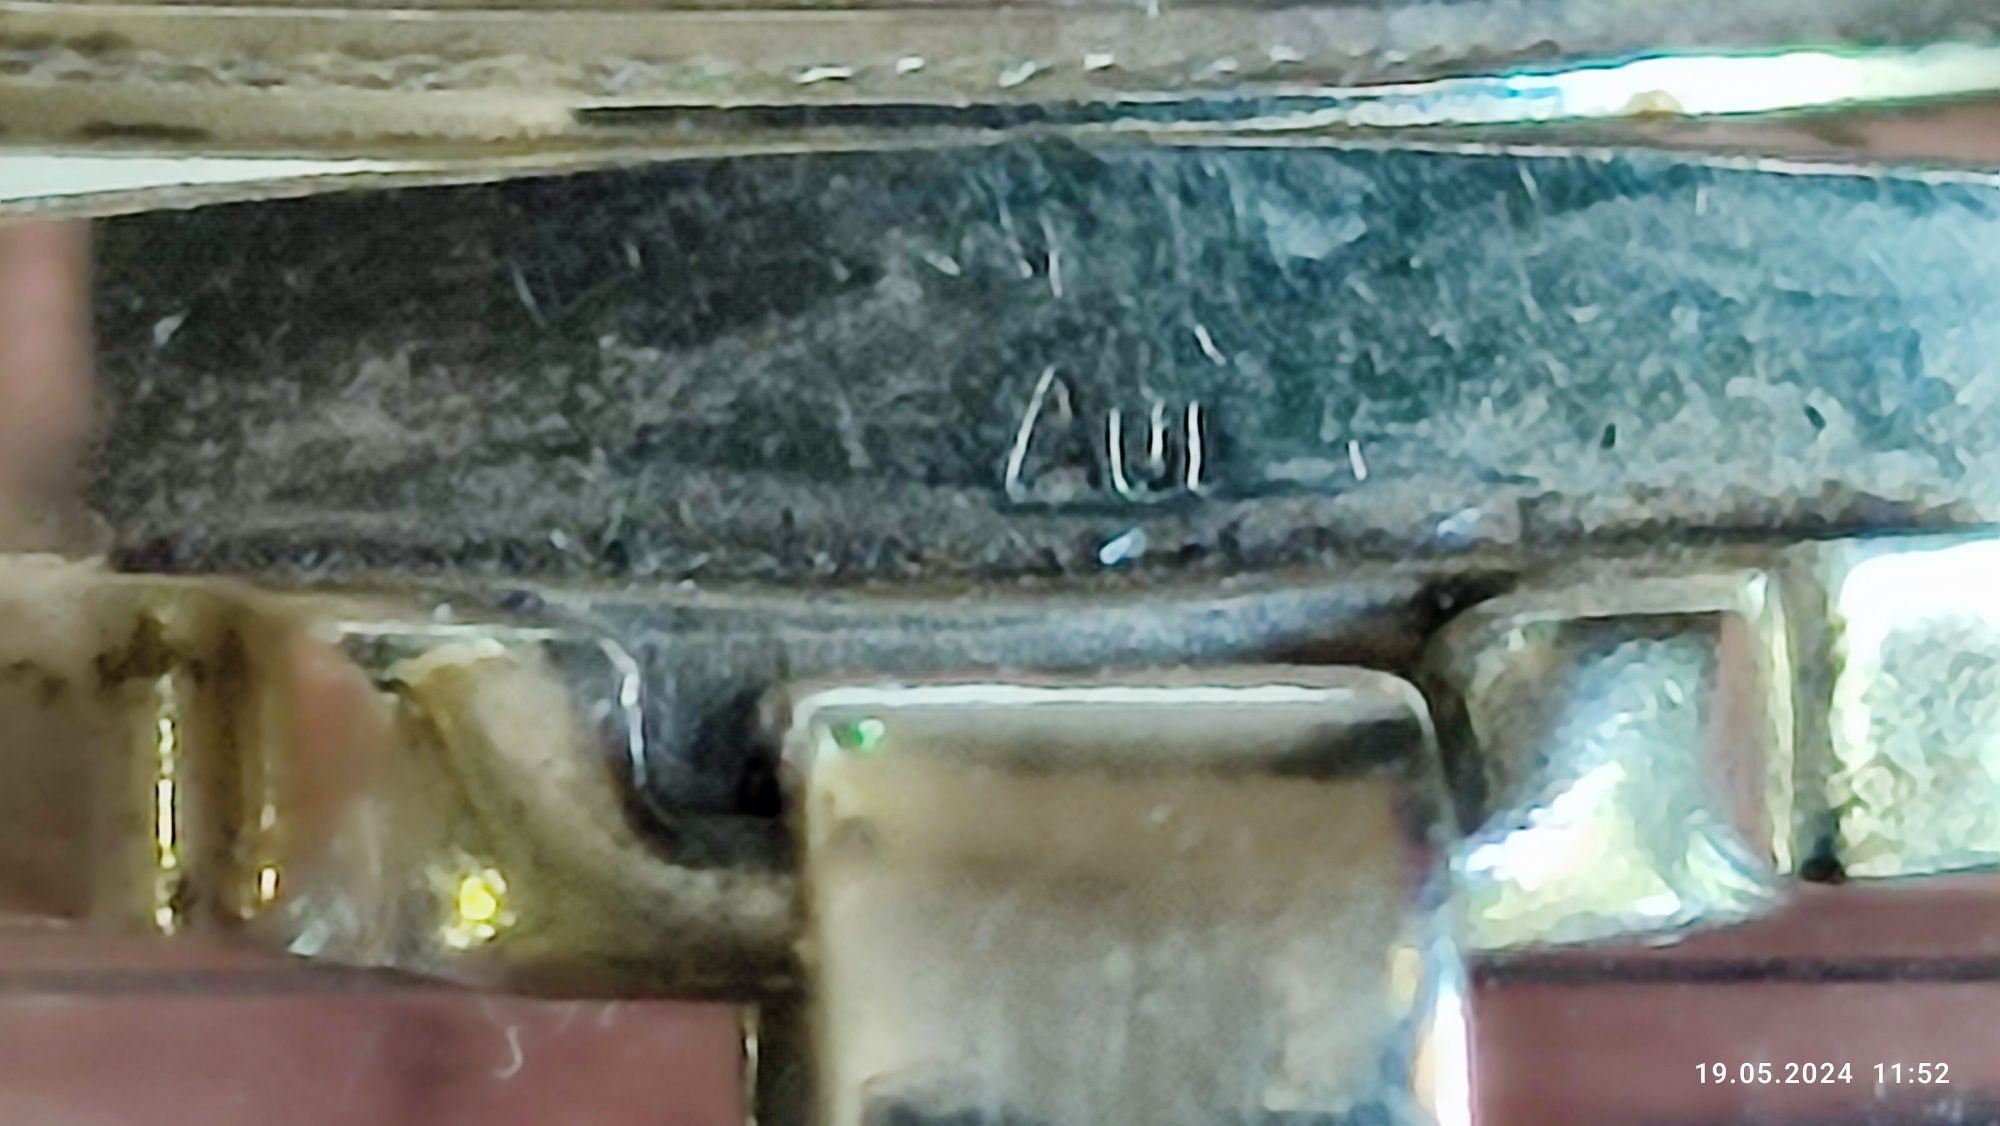 Женские позолоченные часы "Slava" AU.( 17 камней. Экспорт.на ходу